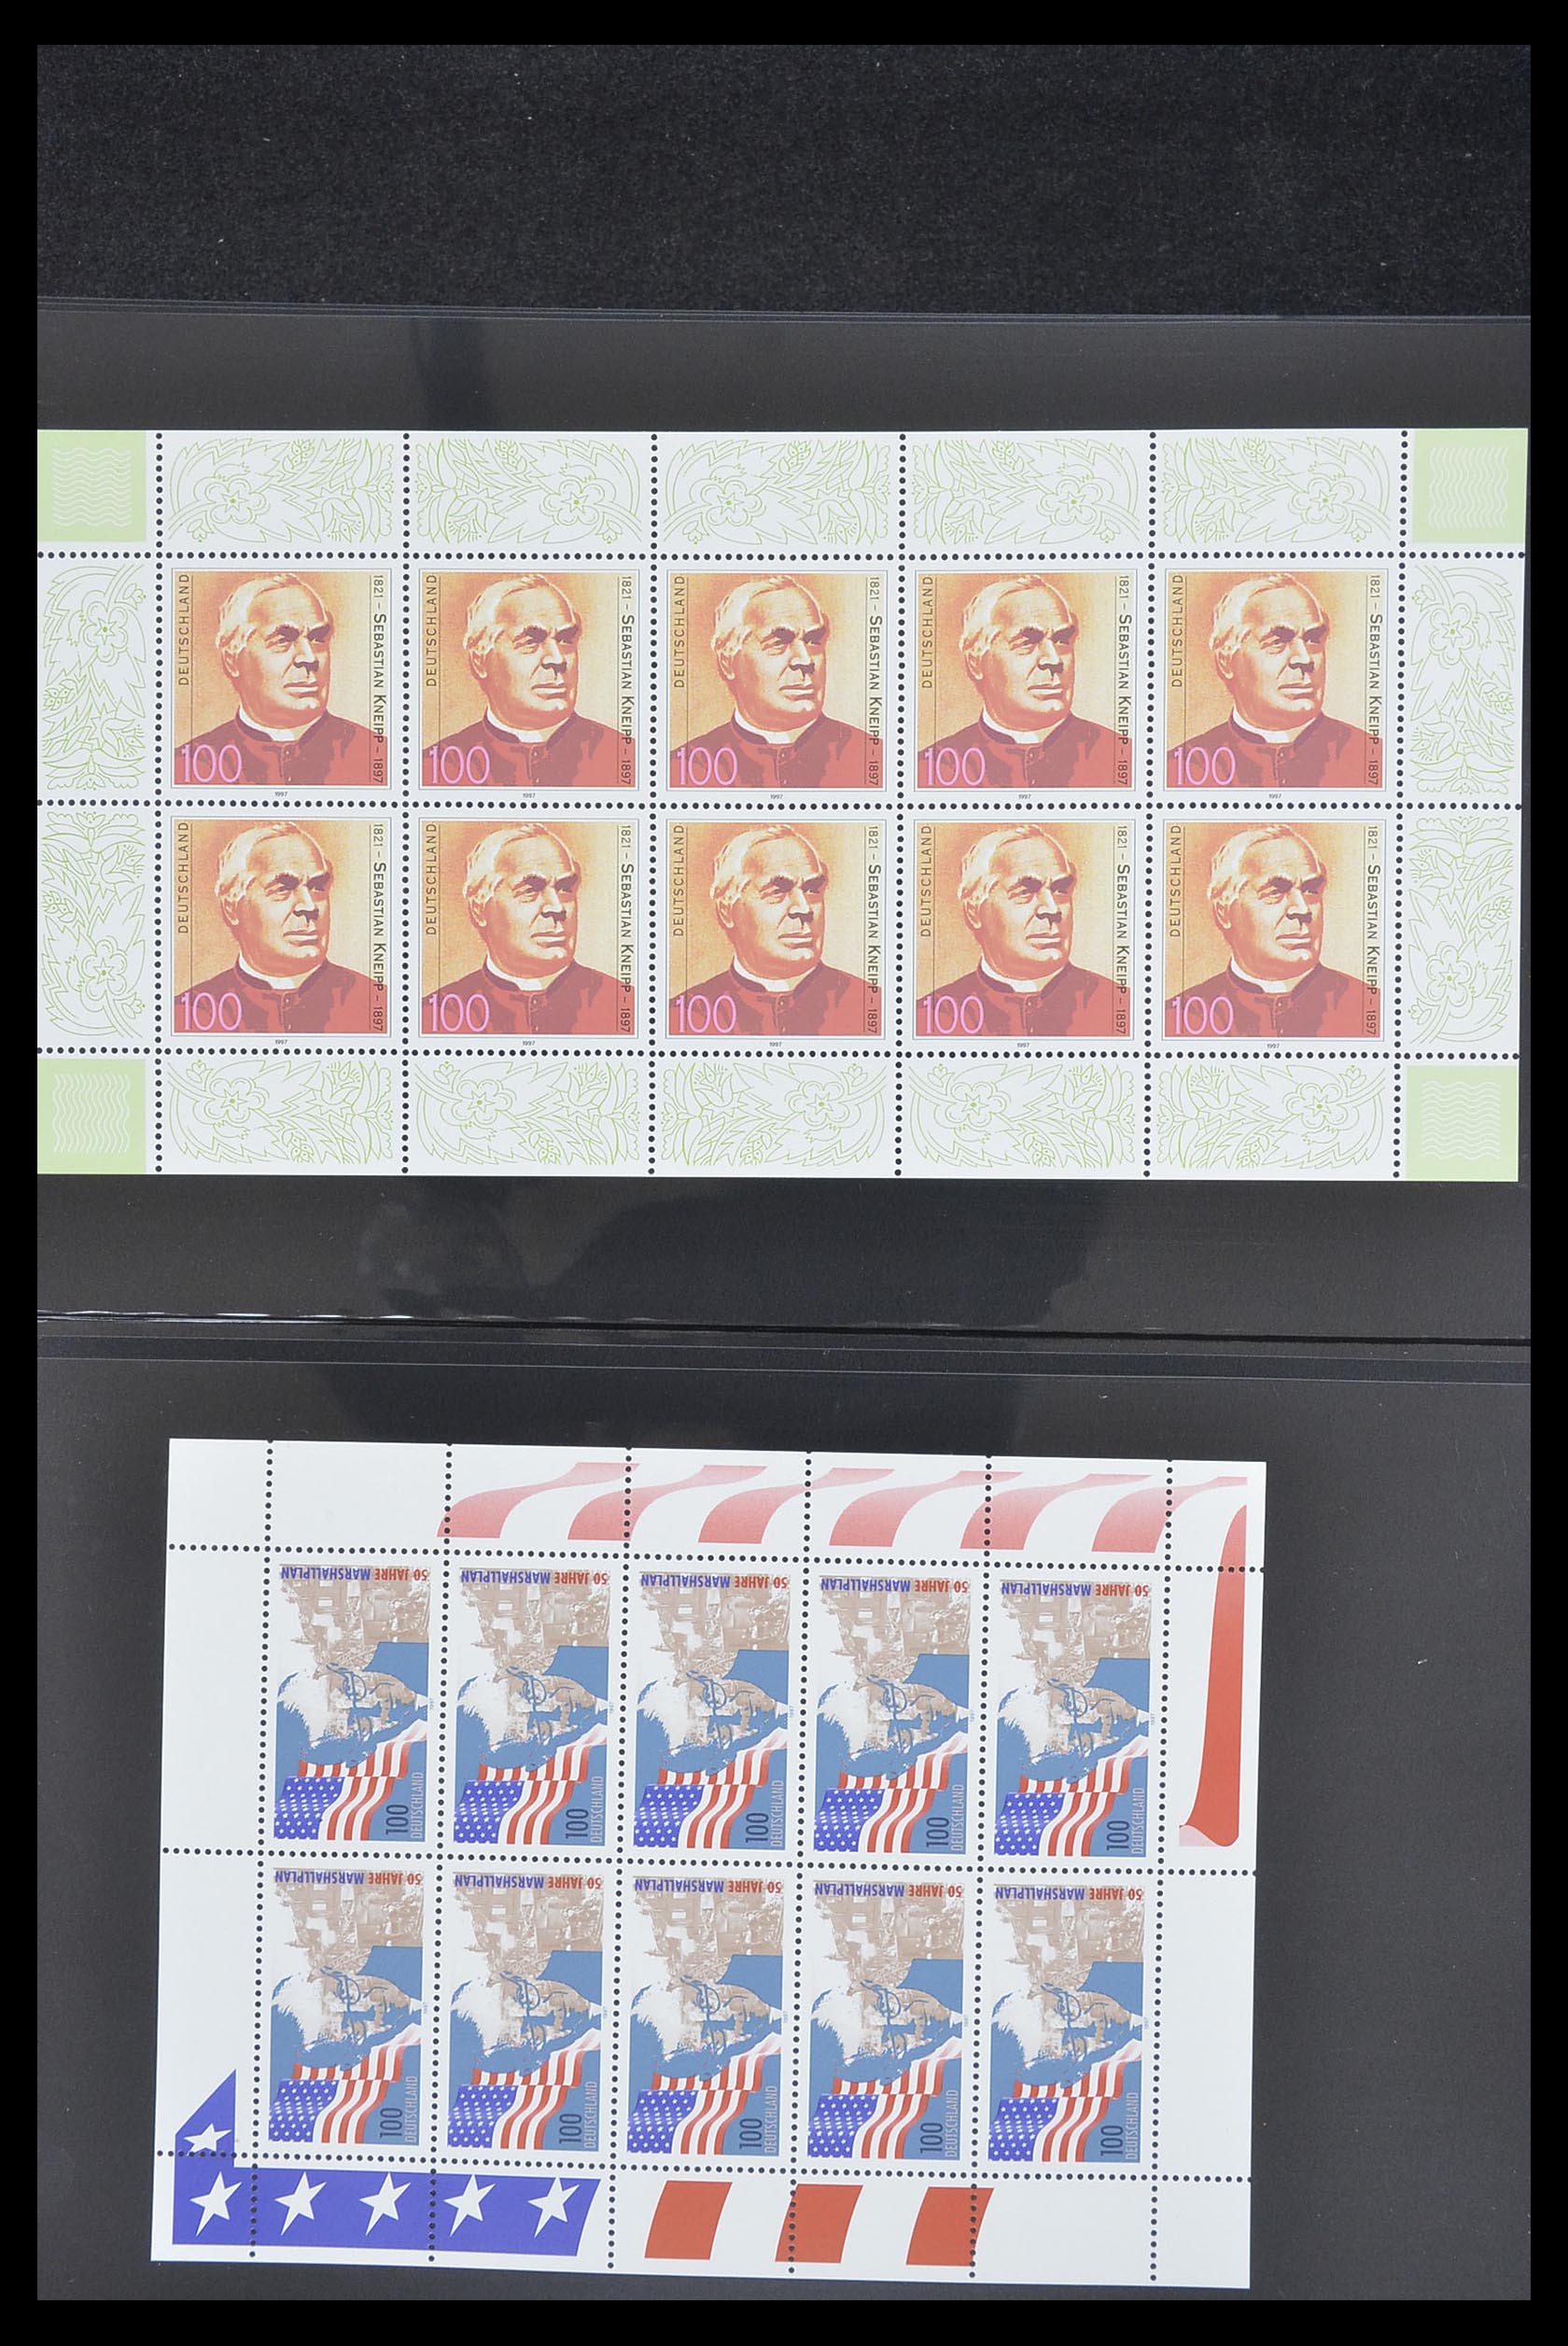 33936 077 - Stamp collection 33936 Bundespost kleinbogen 1994-2000.